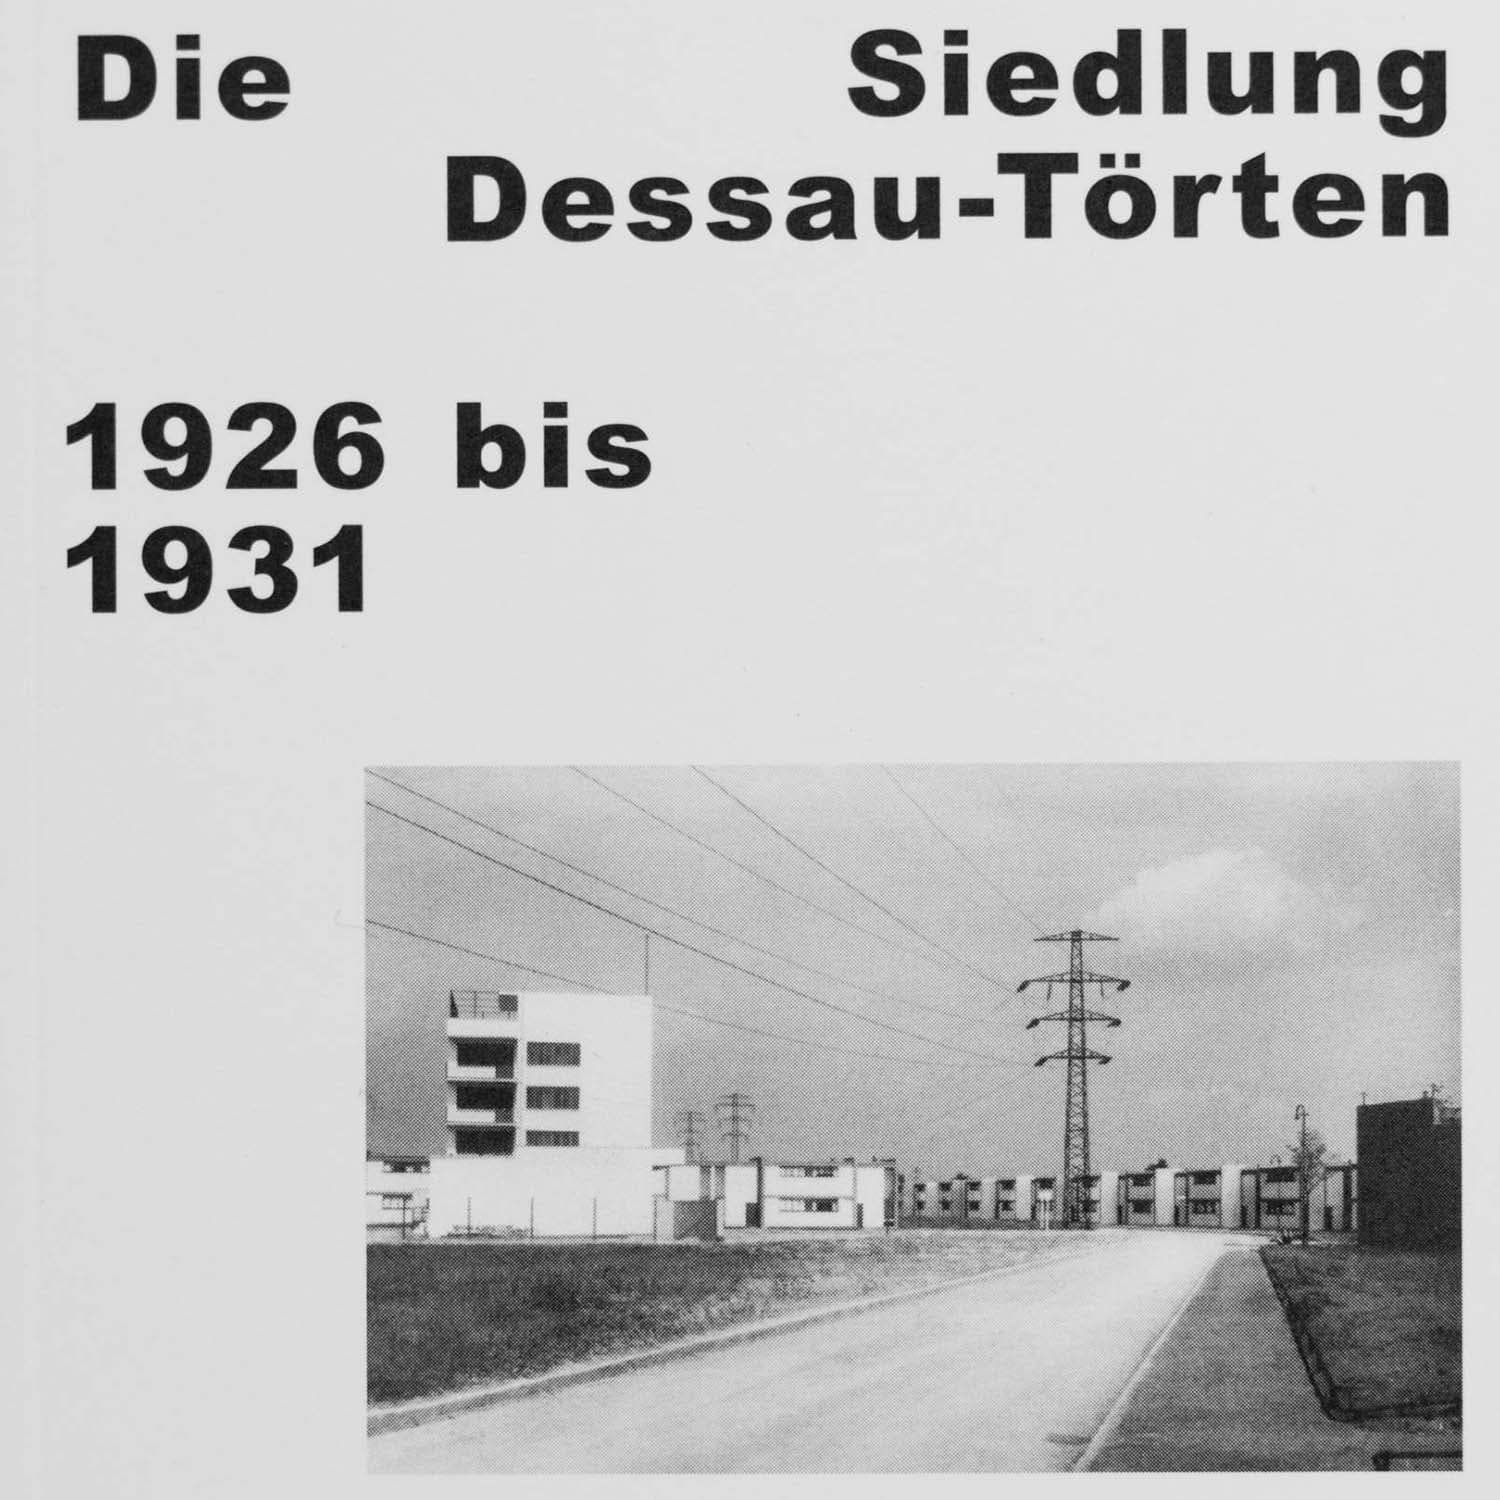 صورة مستوطنة Dessau-Törten 1926-1931
